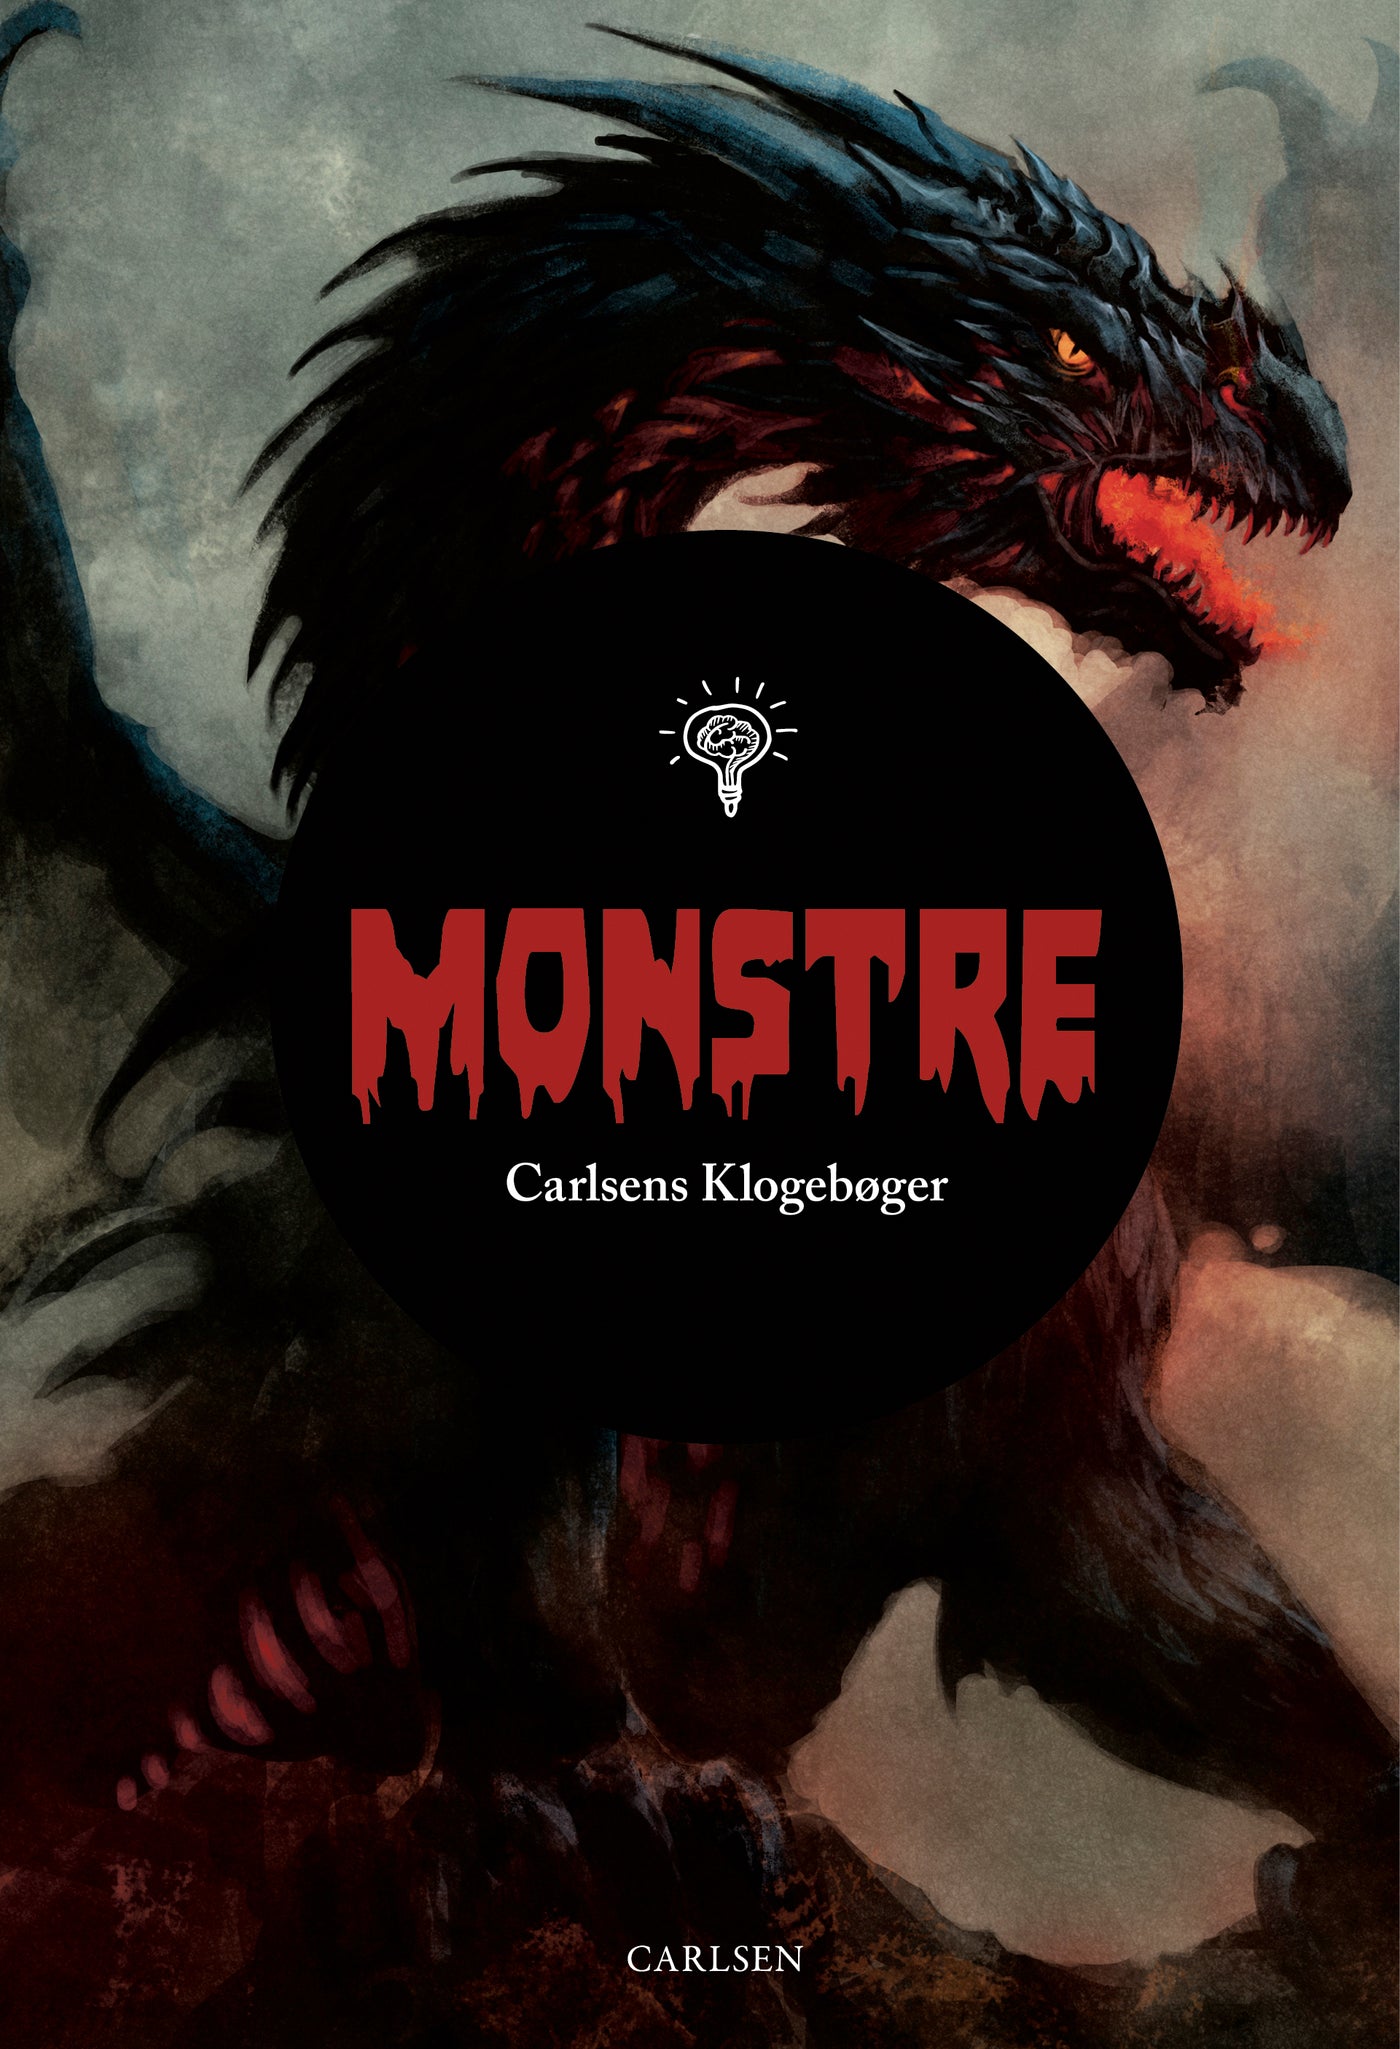 Carlsens Klogebøger - Monstre, Carlsen Forlag